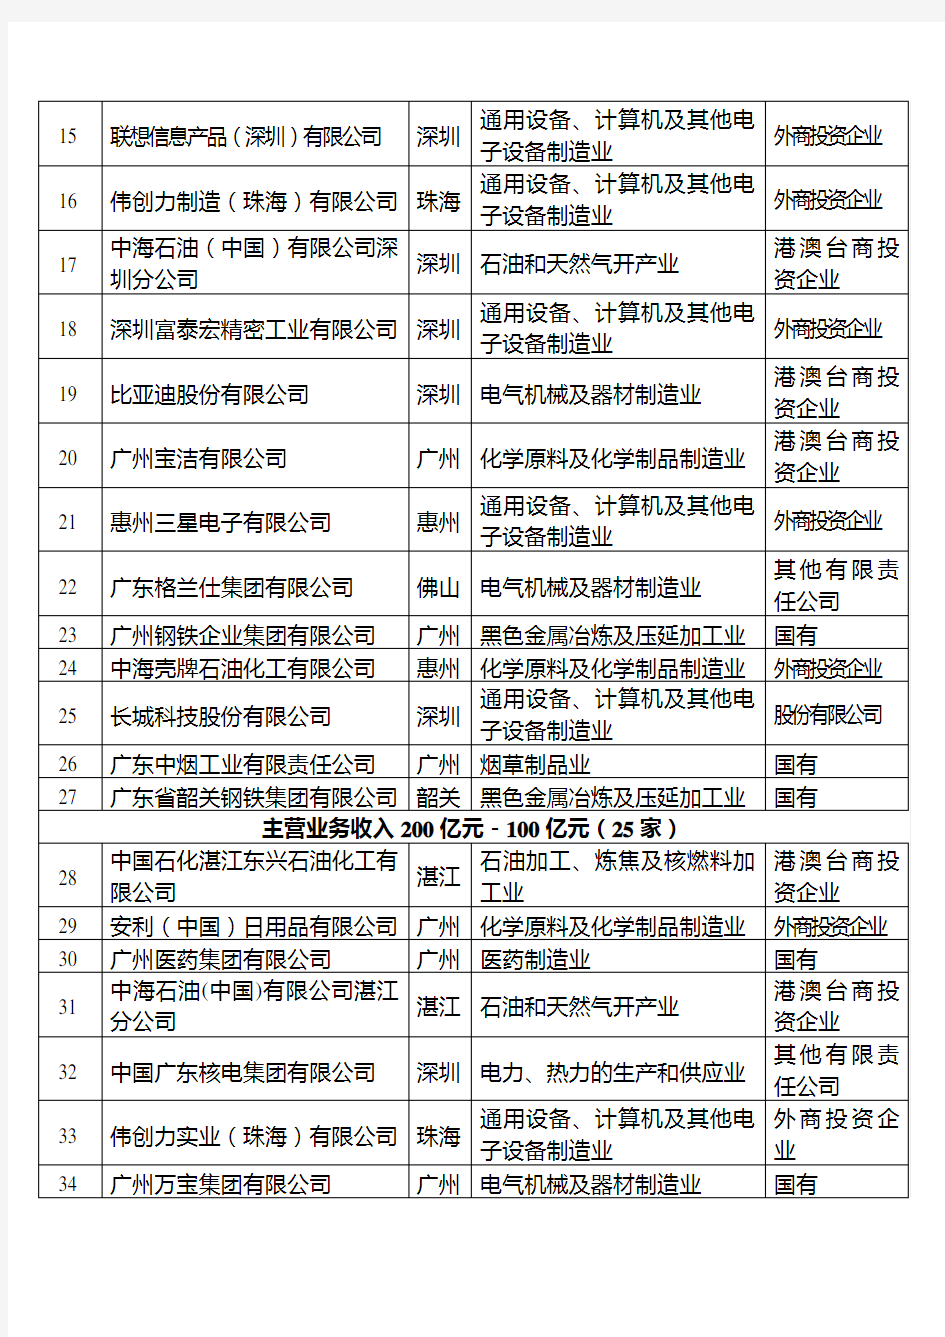 广东最大100家工业企业名单